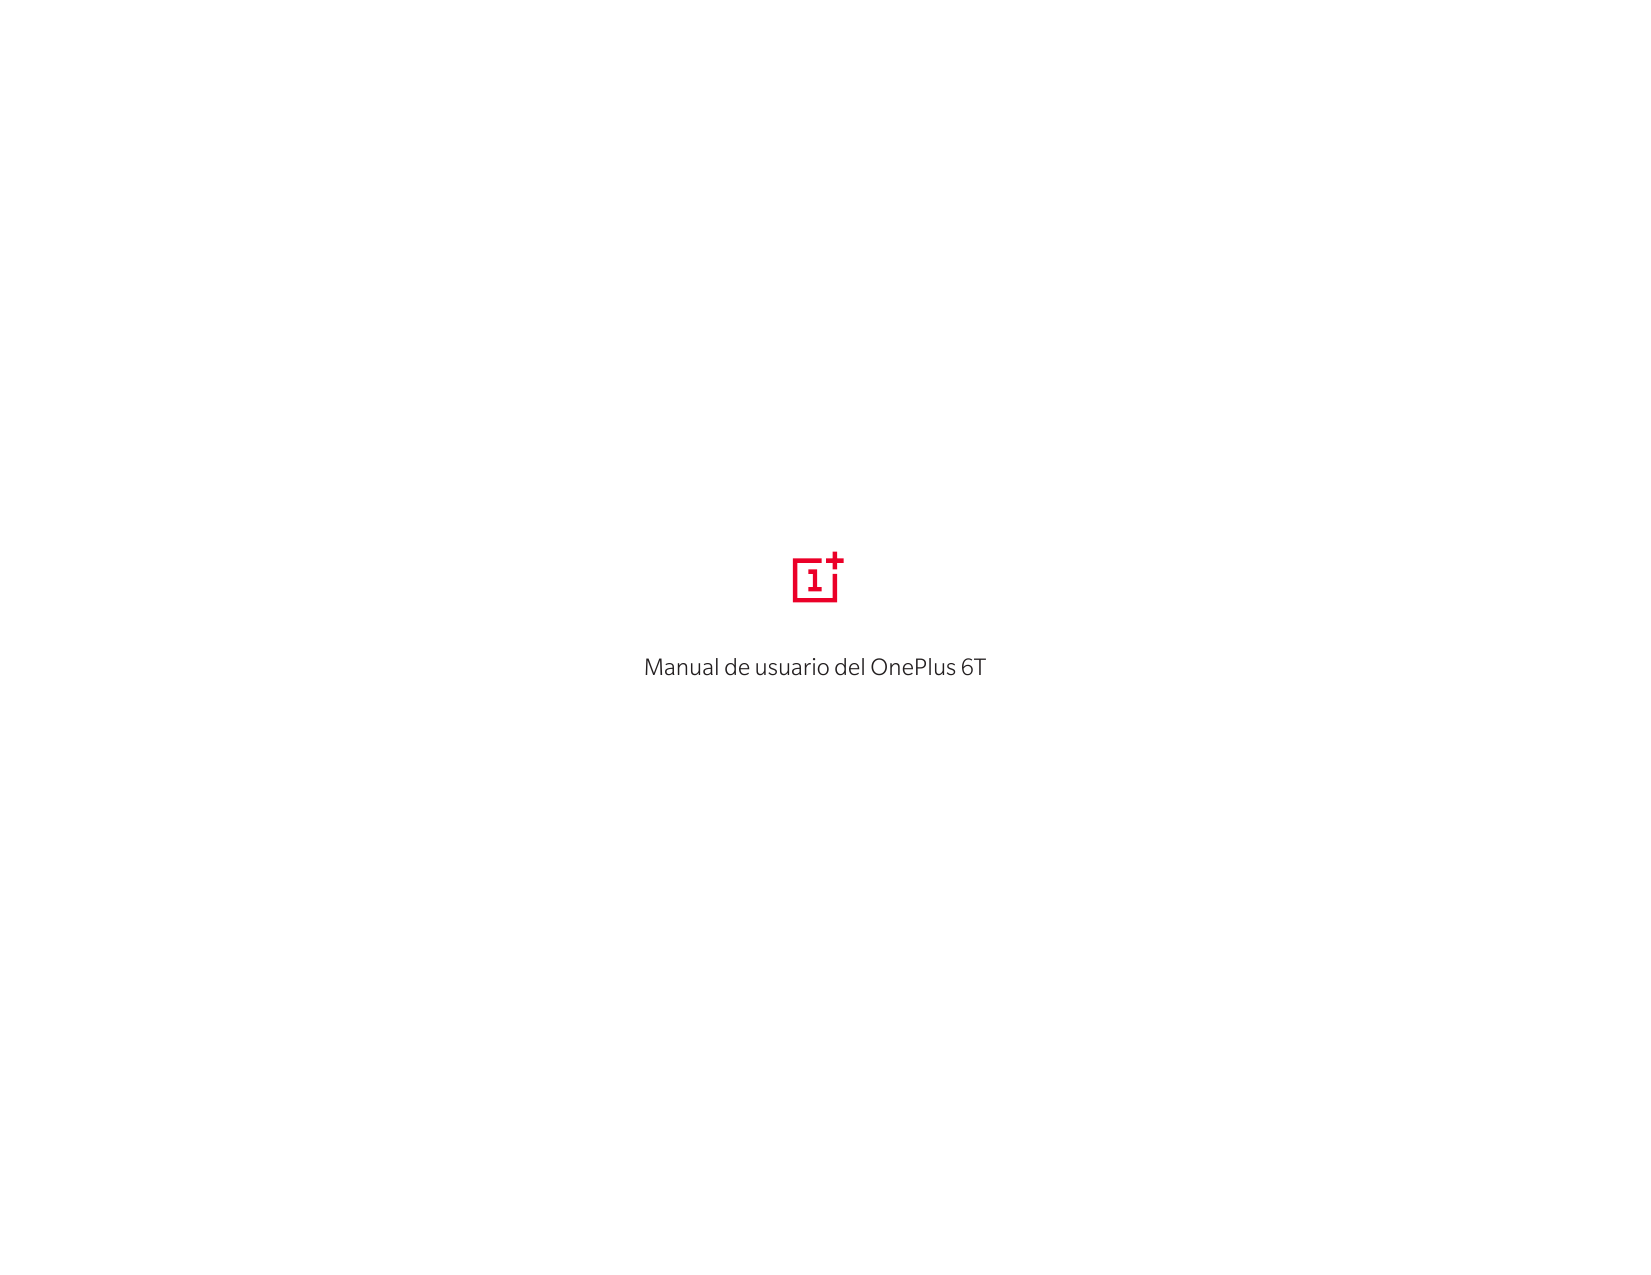 Manual de usuario del OnePlus 6T